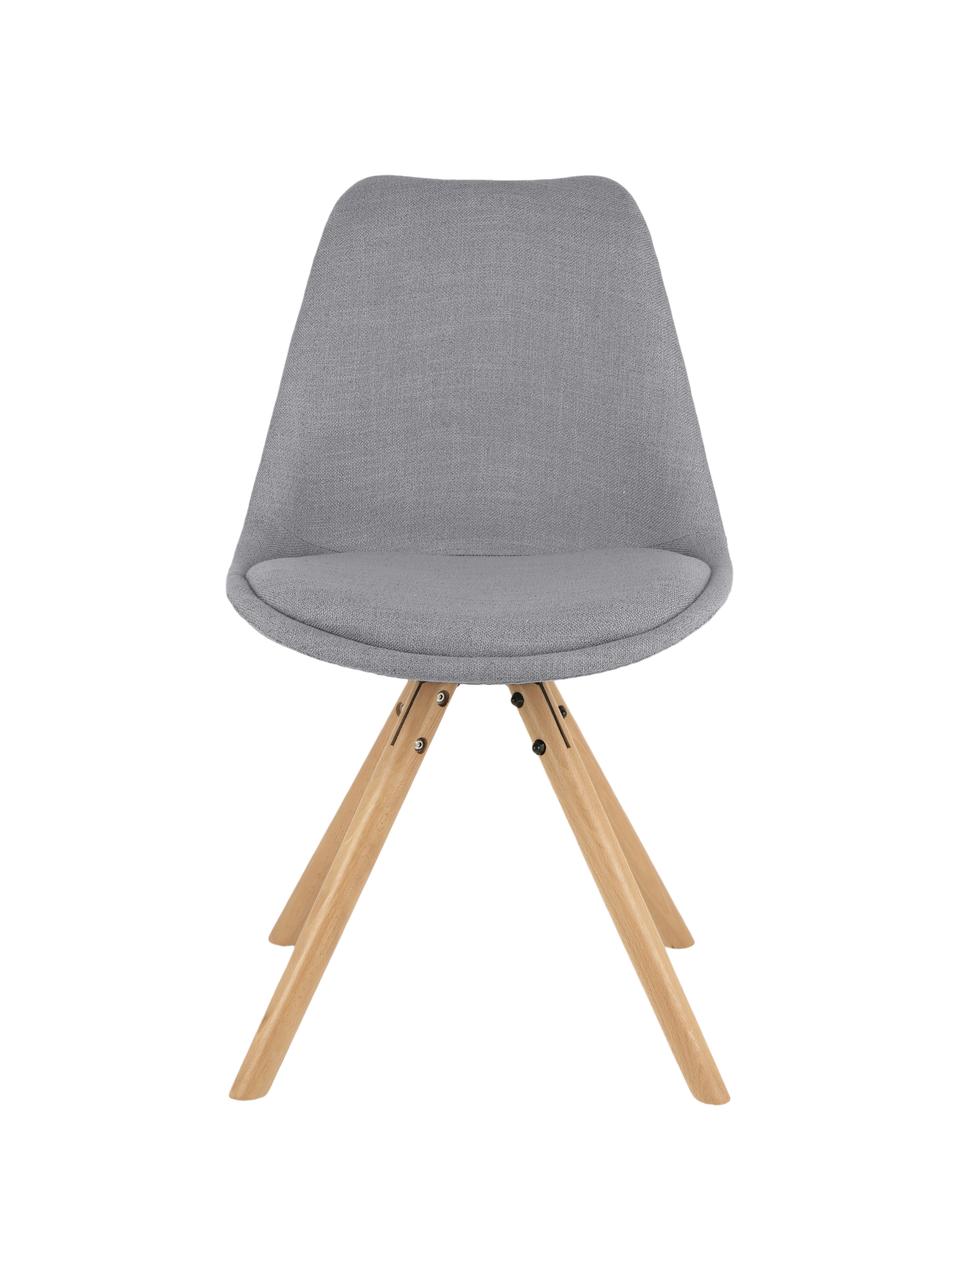 Gestoffeerde stoelen Maxi, 2 stuks, Zitvlak: kunststof, Bekleding: polyester, Poten: beukenhout, Bekleding: grijs. Poten: beukenhoutkleurig, B 46 x D 54 cm